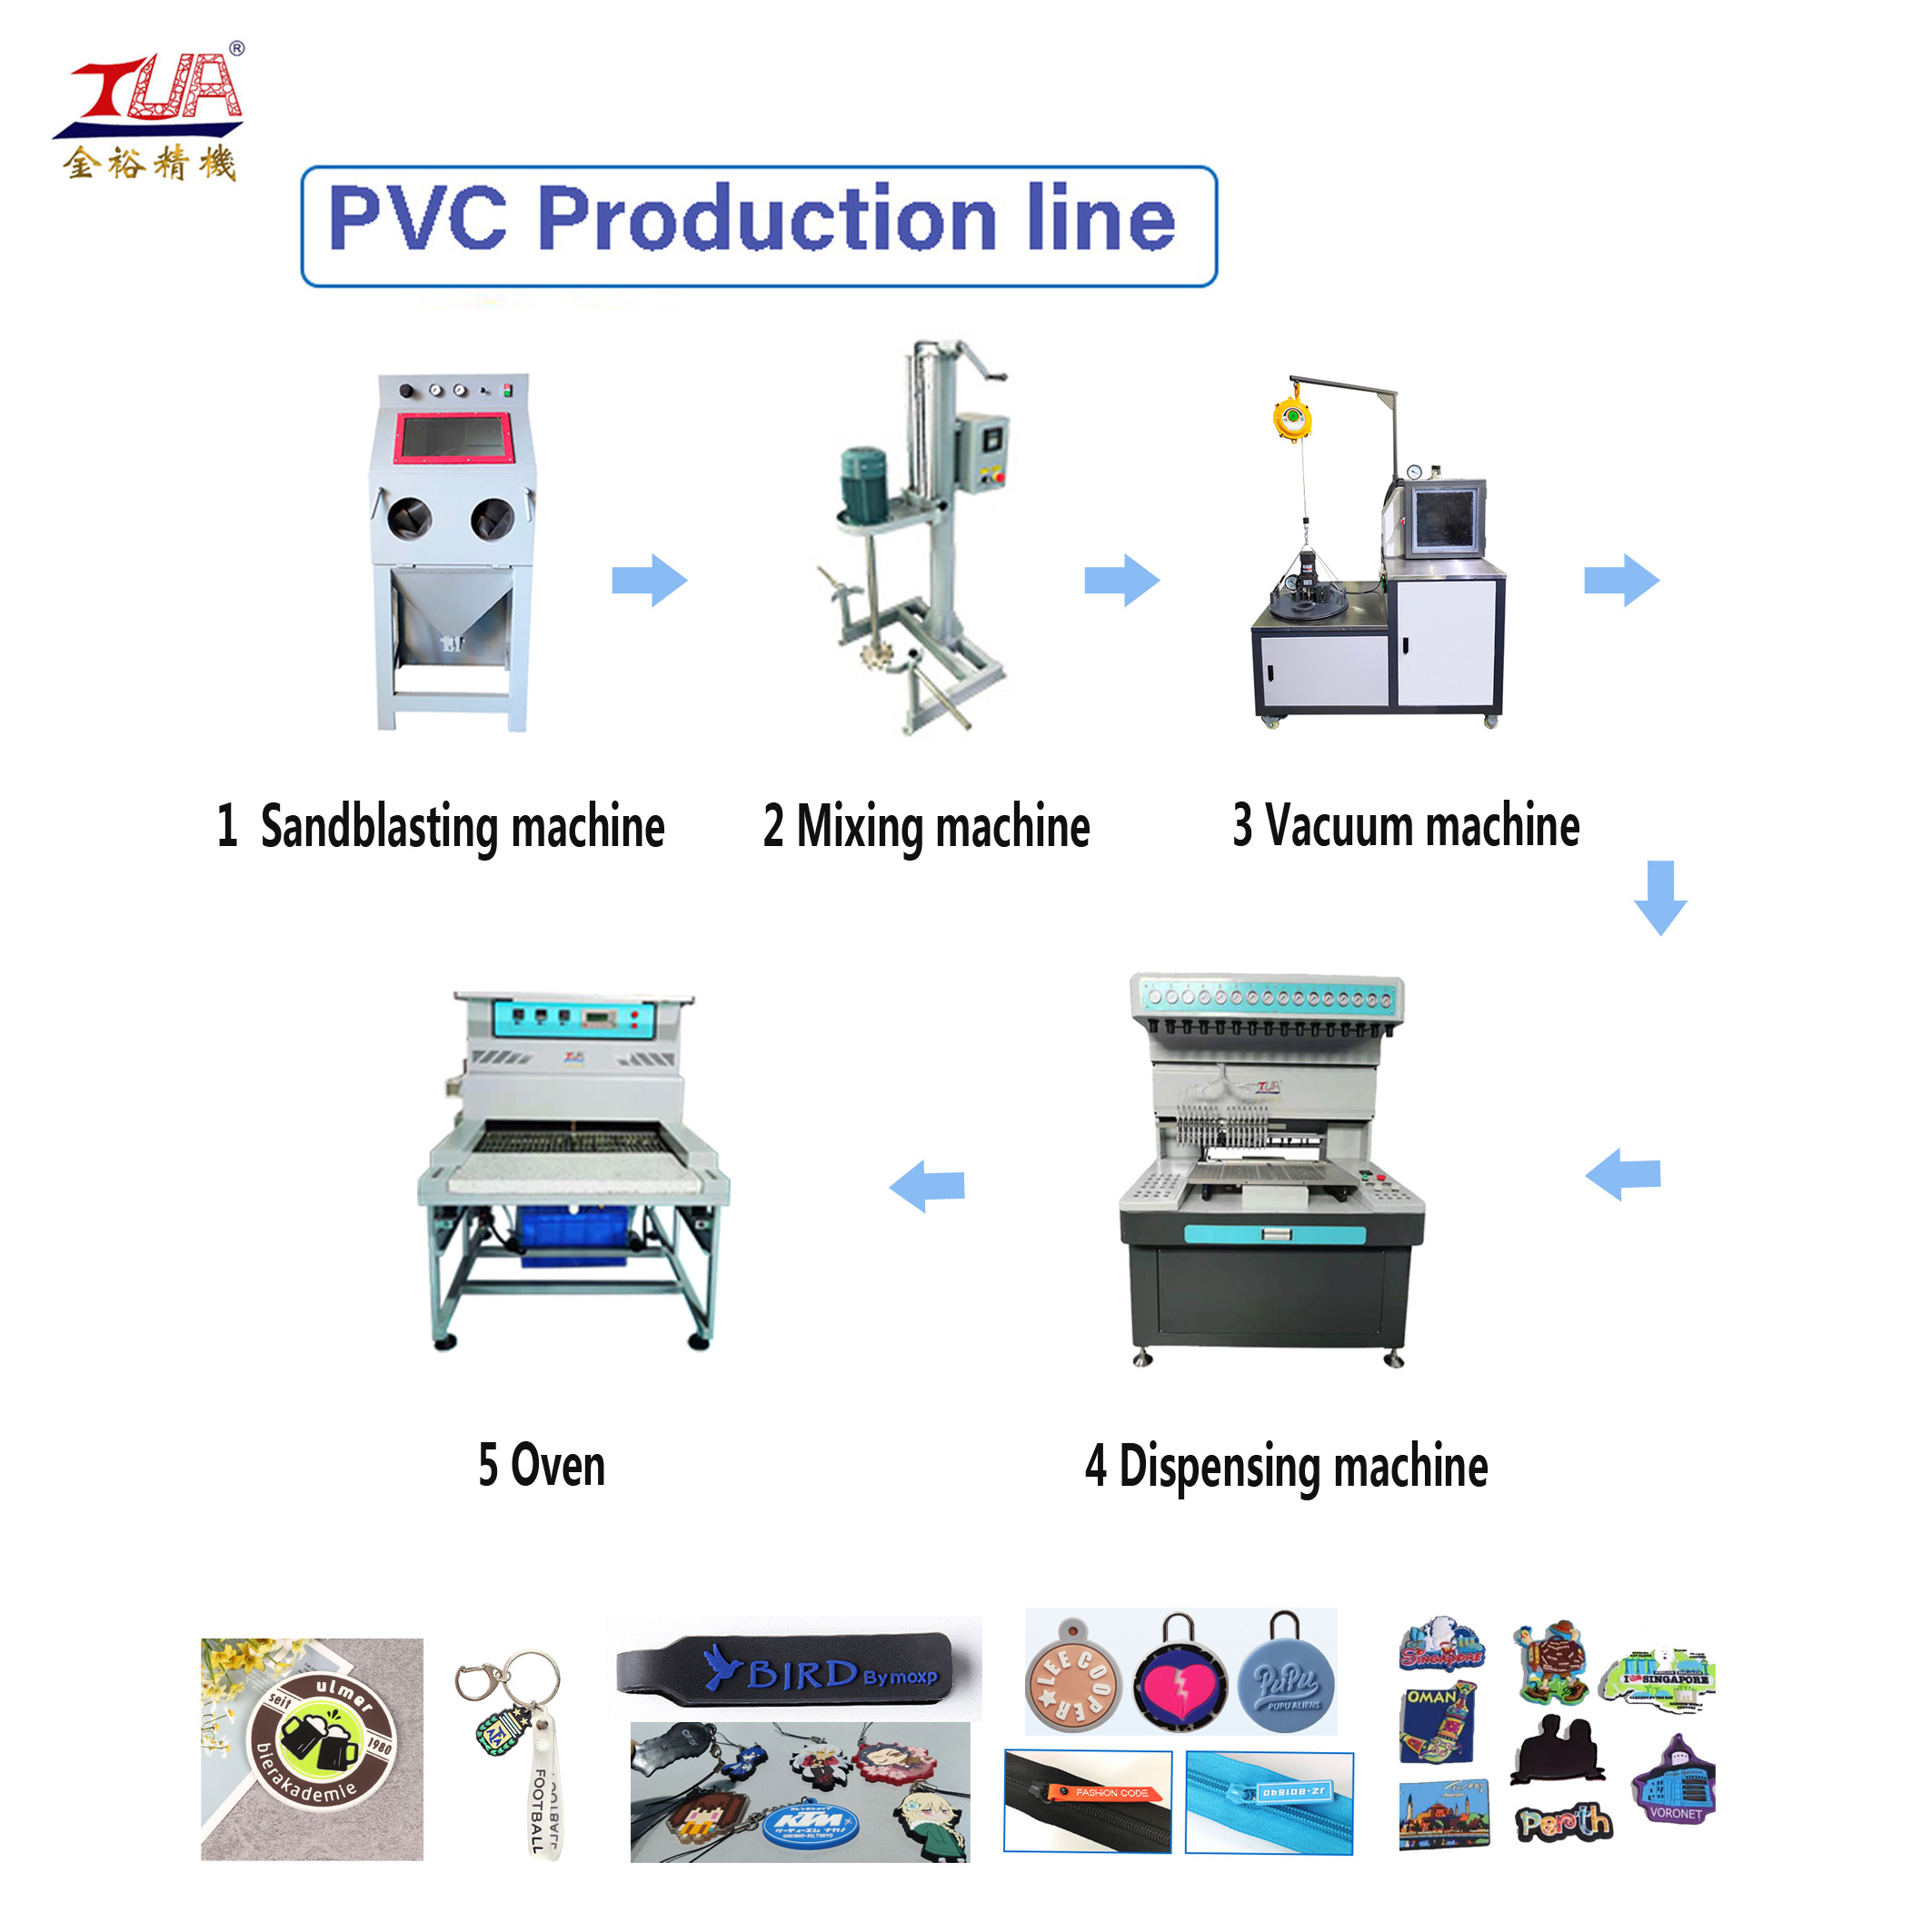 PVC production process line